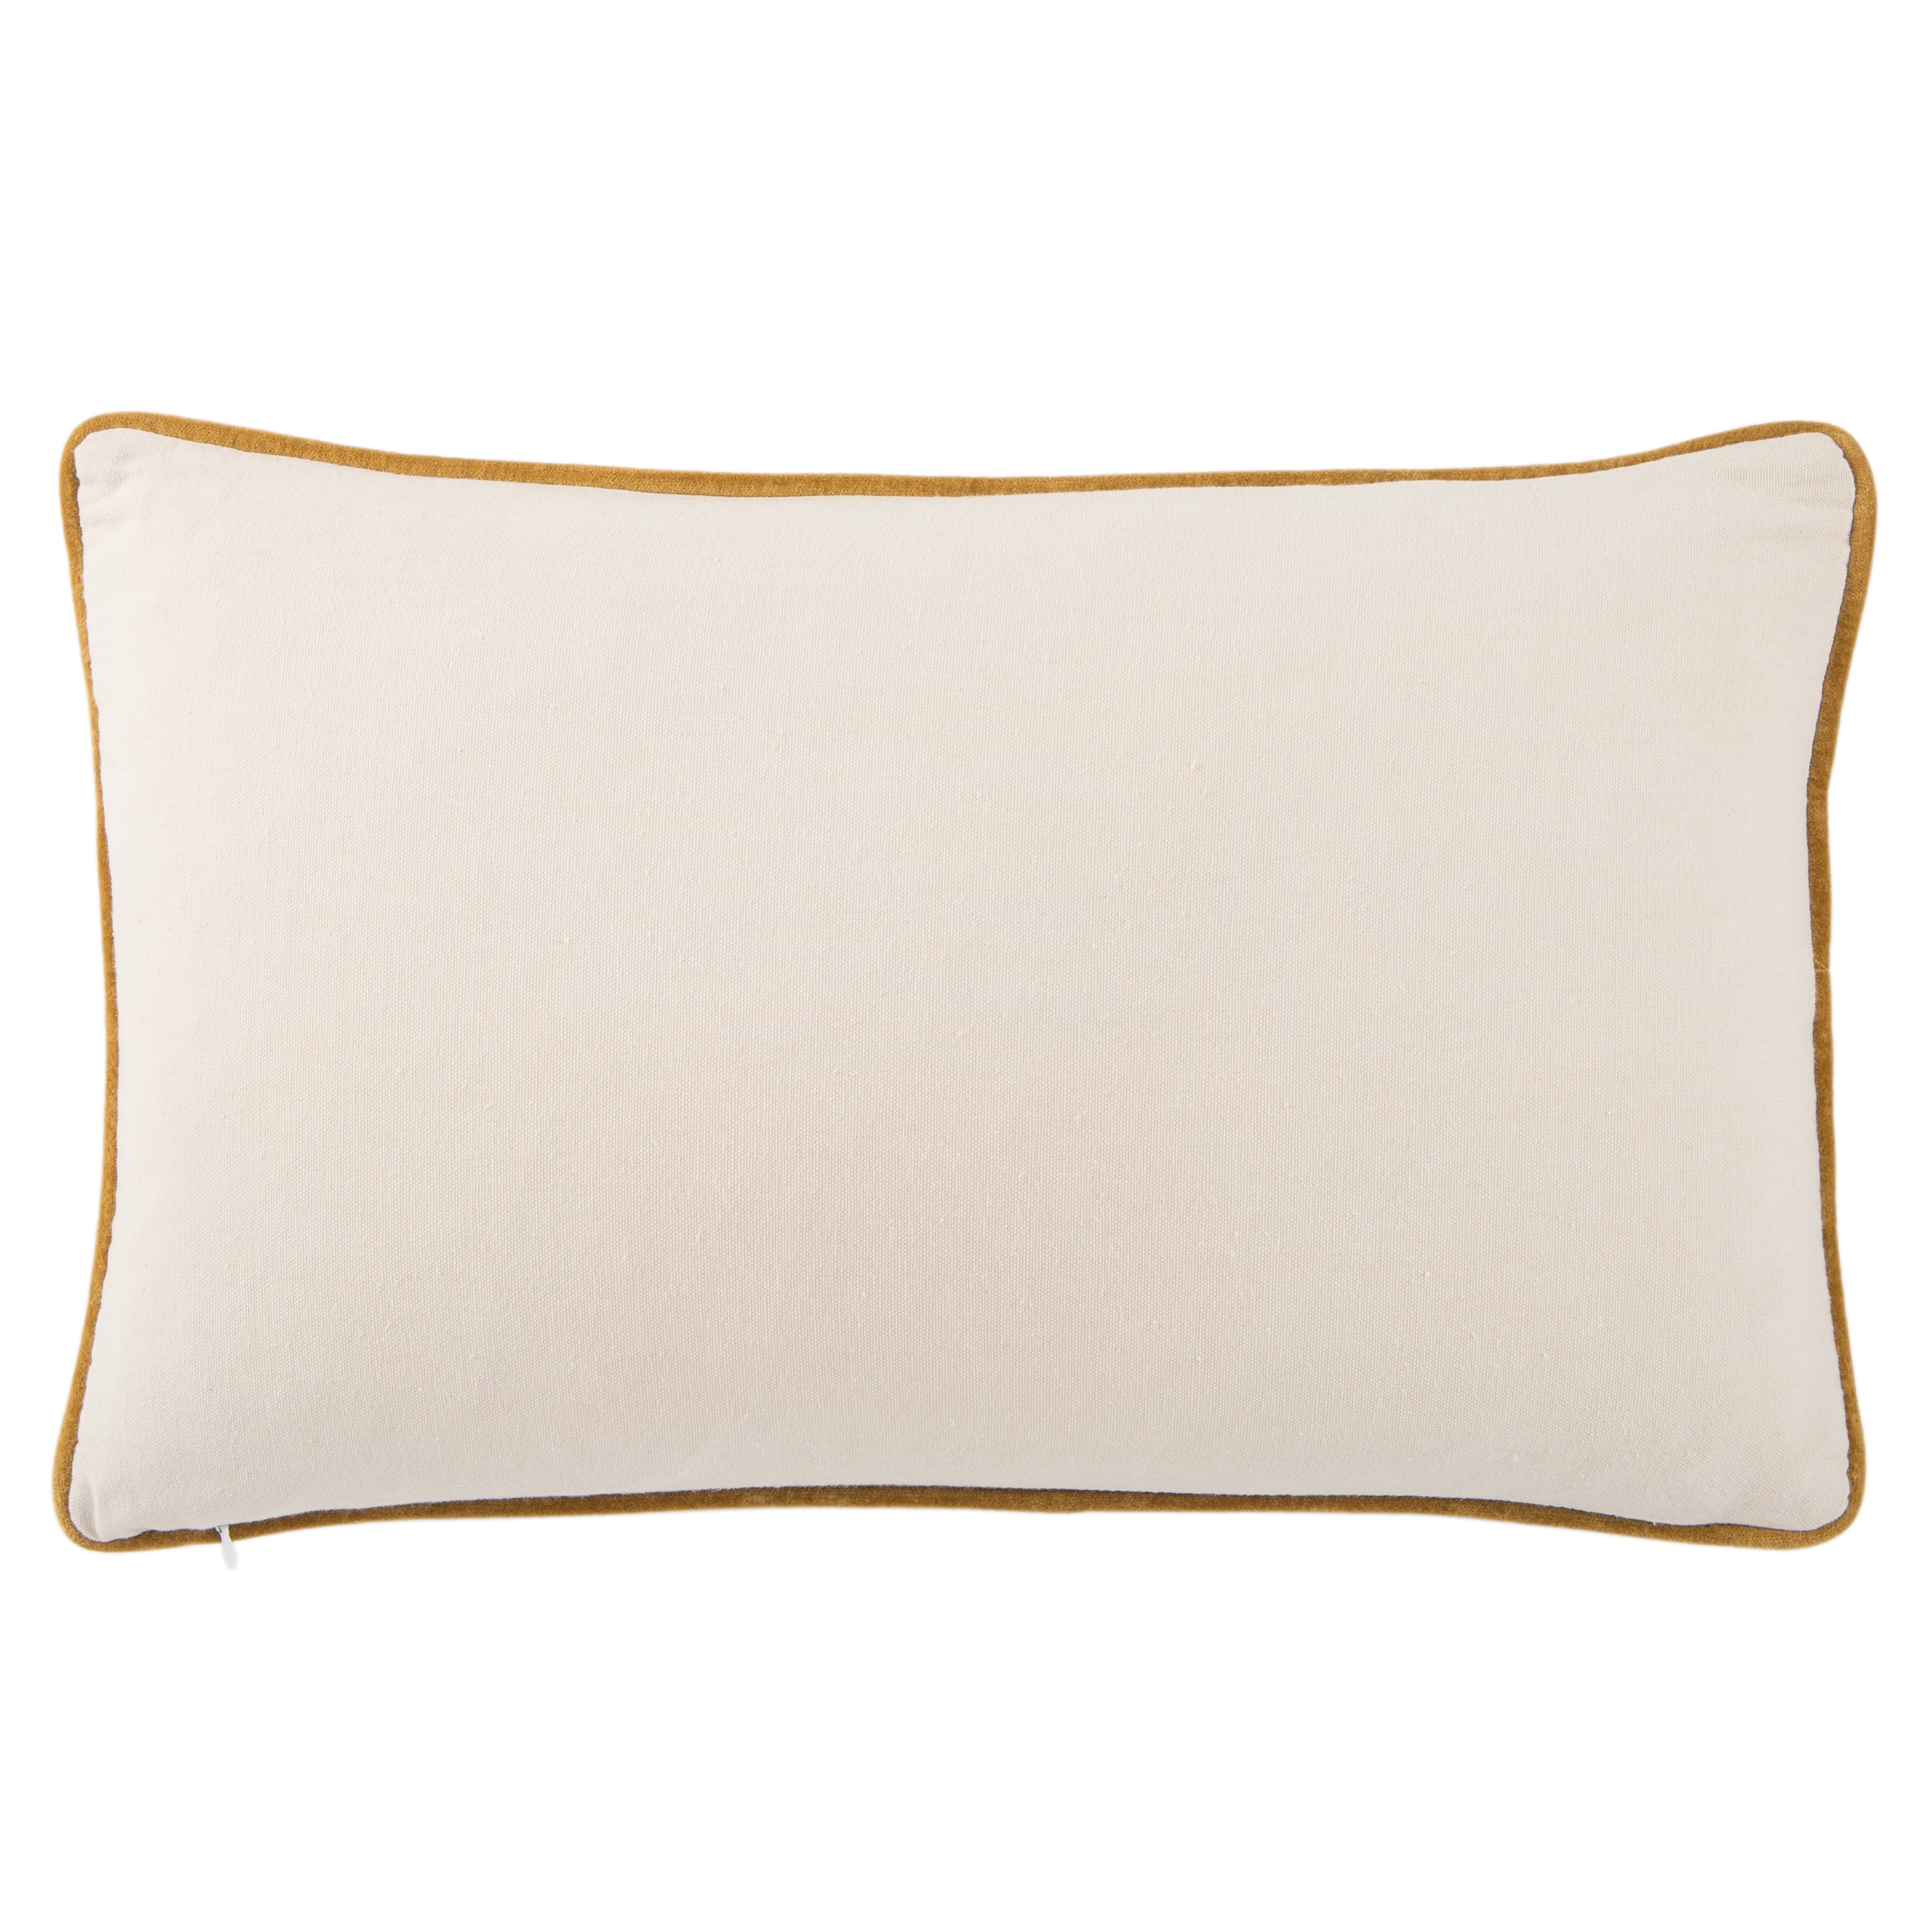 Design (US) Navy 13"X21" Pillow - Image 1